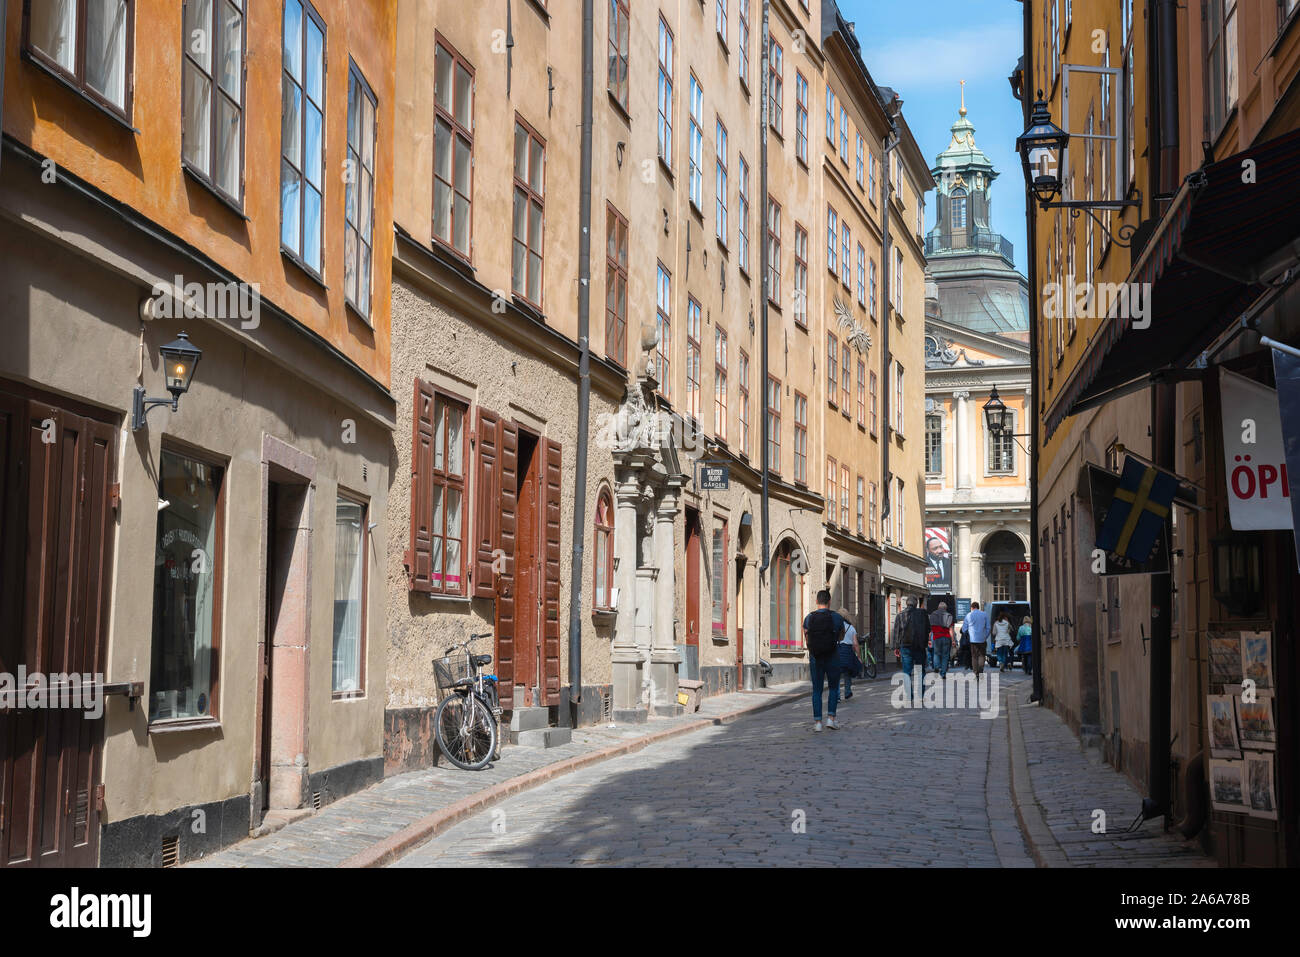 Centre de Stockholm centre, vue le long Svartmangatan, une rue pavée typique dans la vieille ville (Gamla Stan) Salon de Stockholm, Suède. Banque D'Images